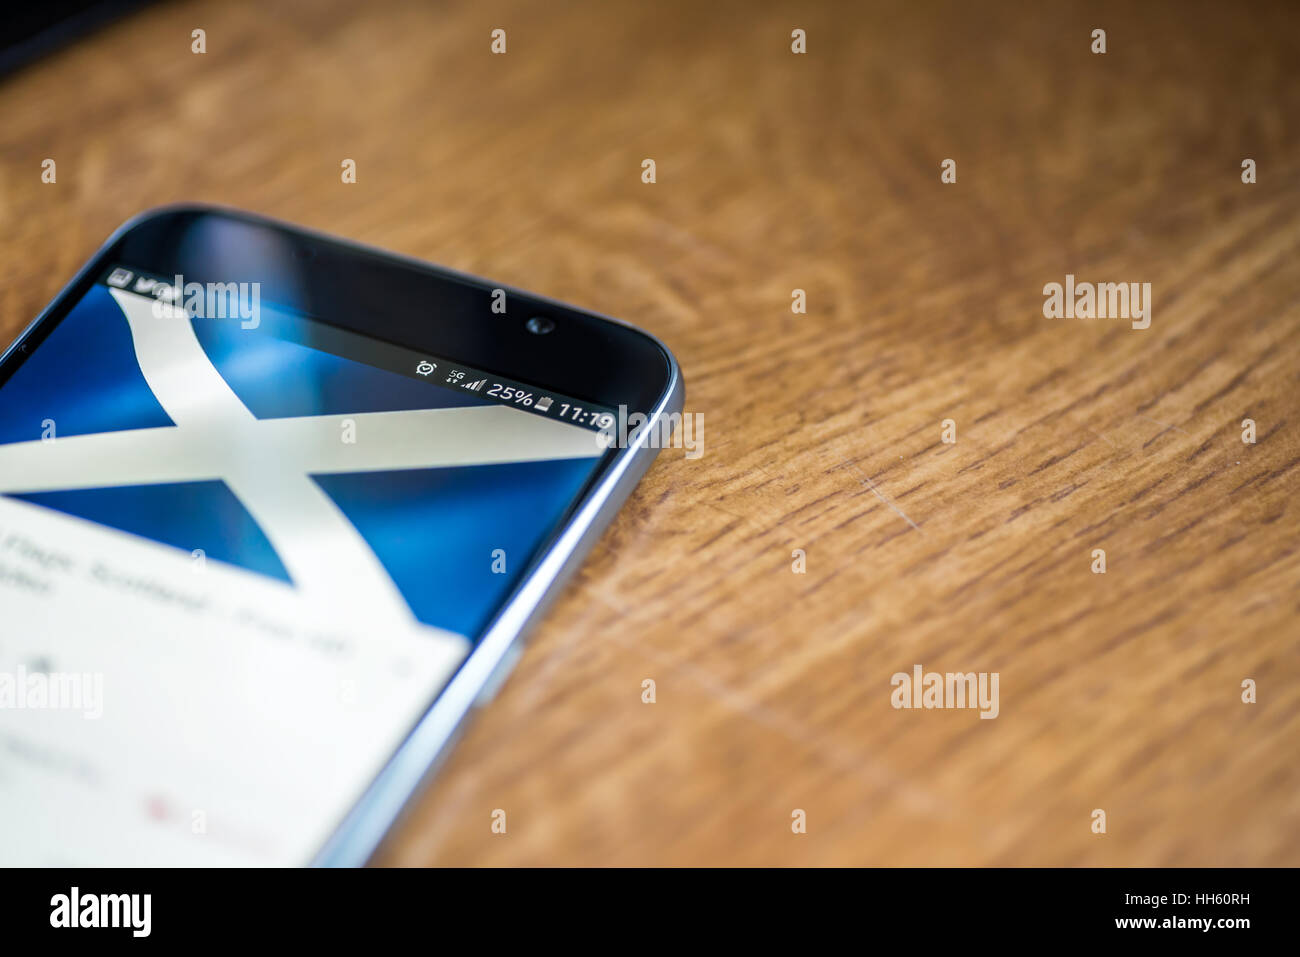 Sur fond de bois avec smartphone 5G Réseau inscription 25  % et de l'Écosse drapeau sur l'écran. Banque D'Images